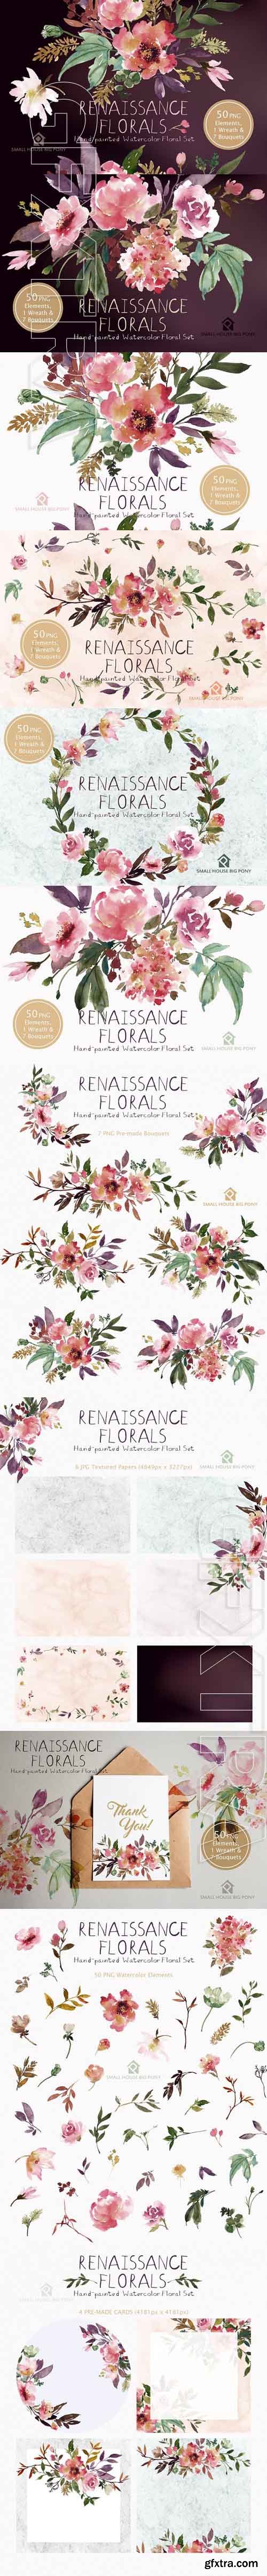 CreativeMarket - Renaissance Florals - Watercolor Set 1904458